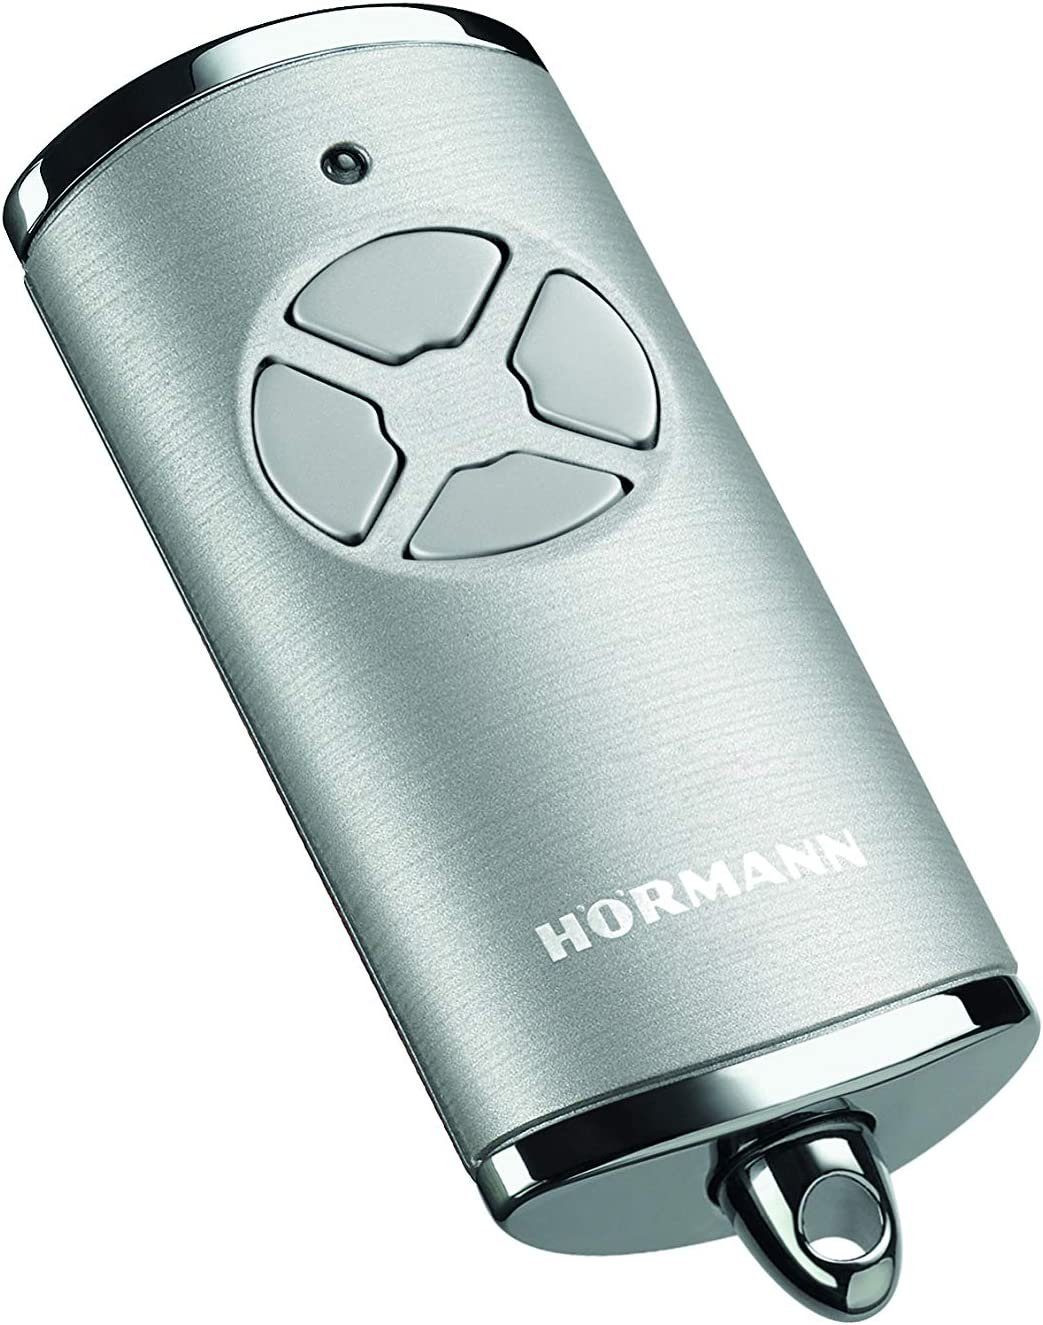 Hörmann Handsender HS 4 BiSecur schwarz inkl. Batterie